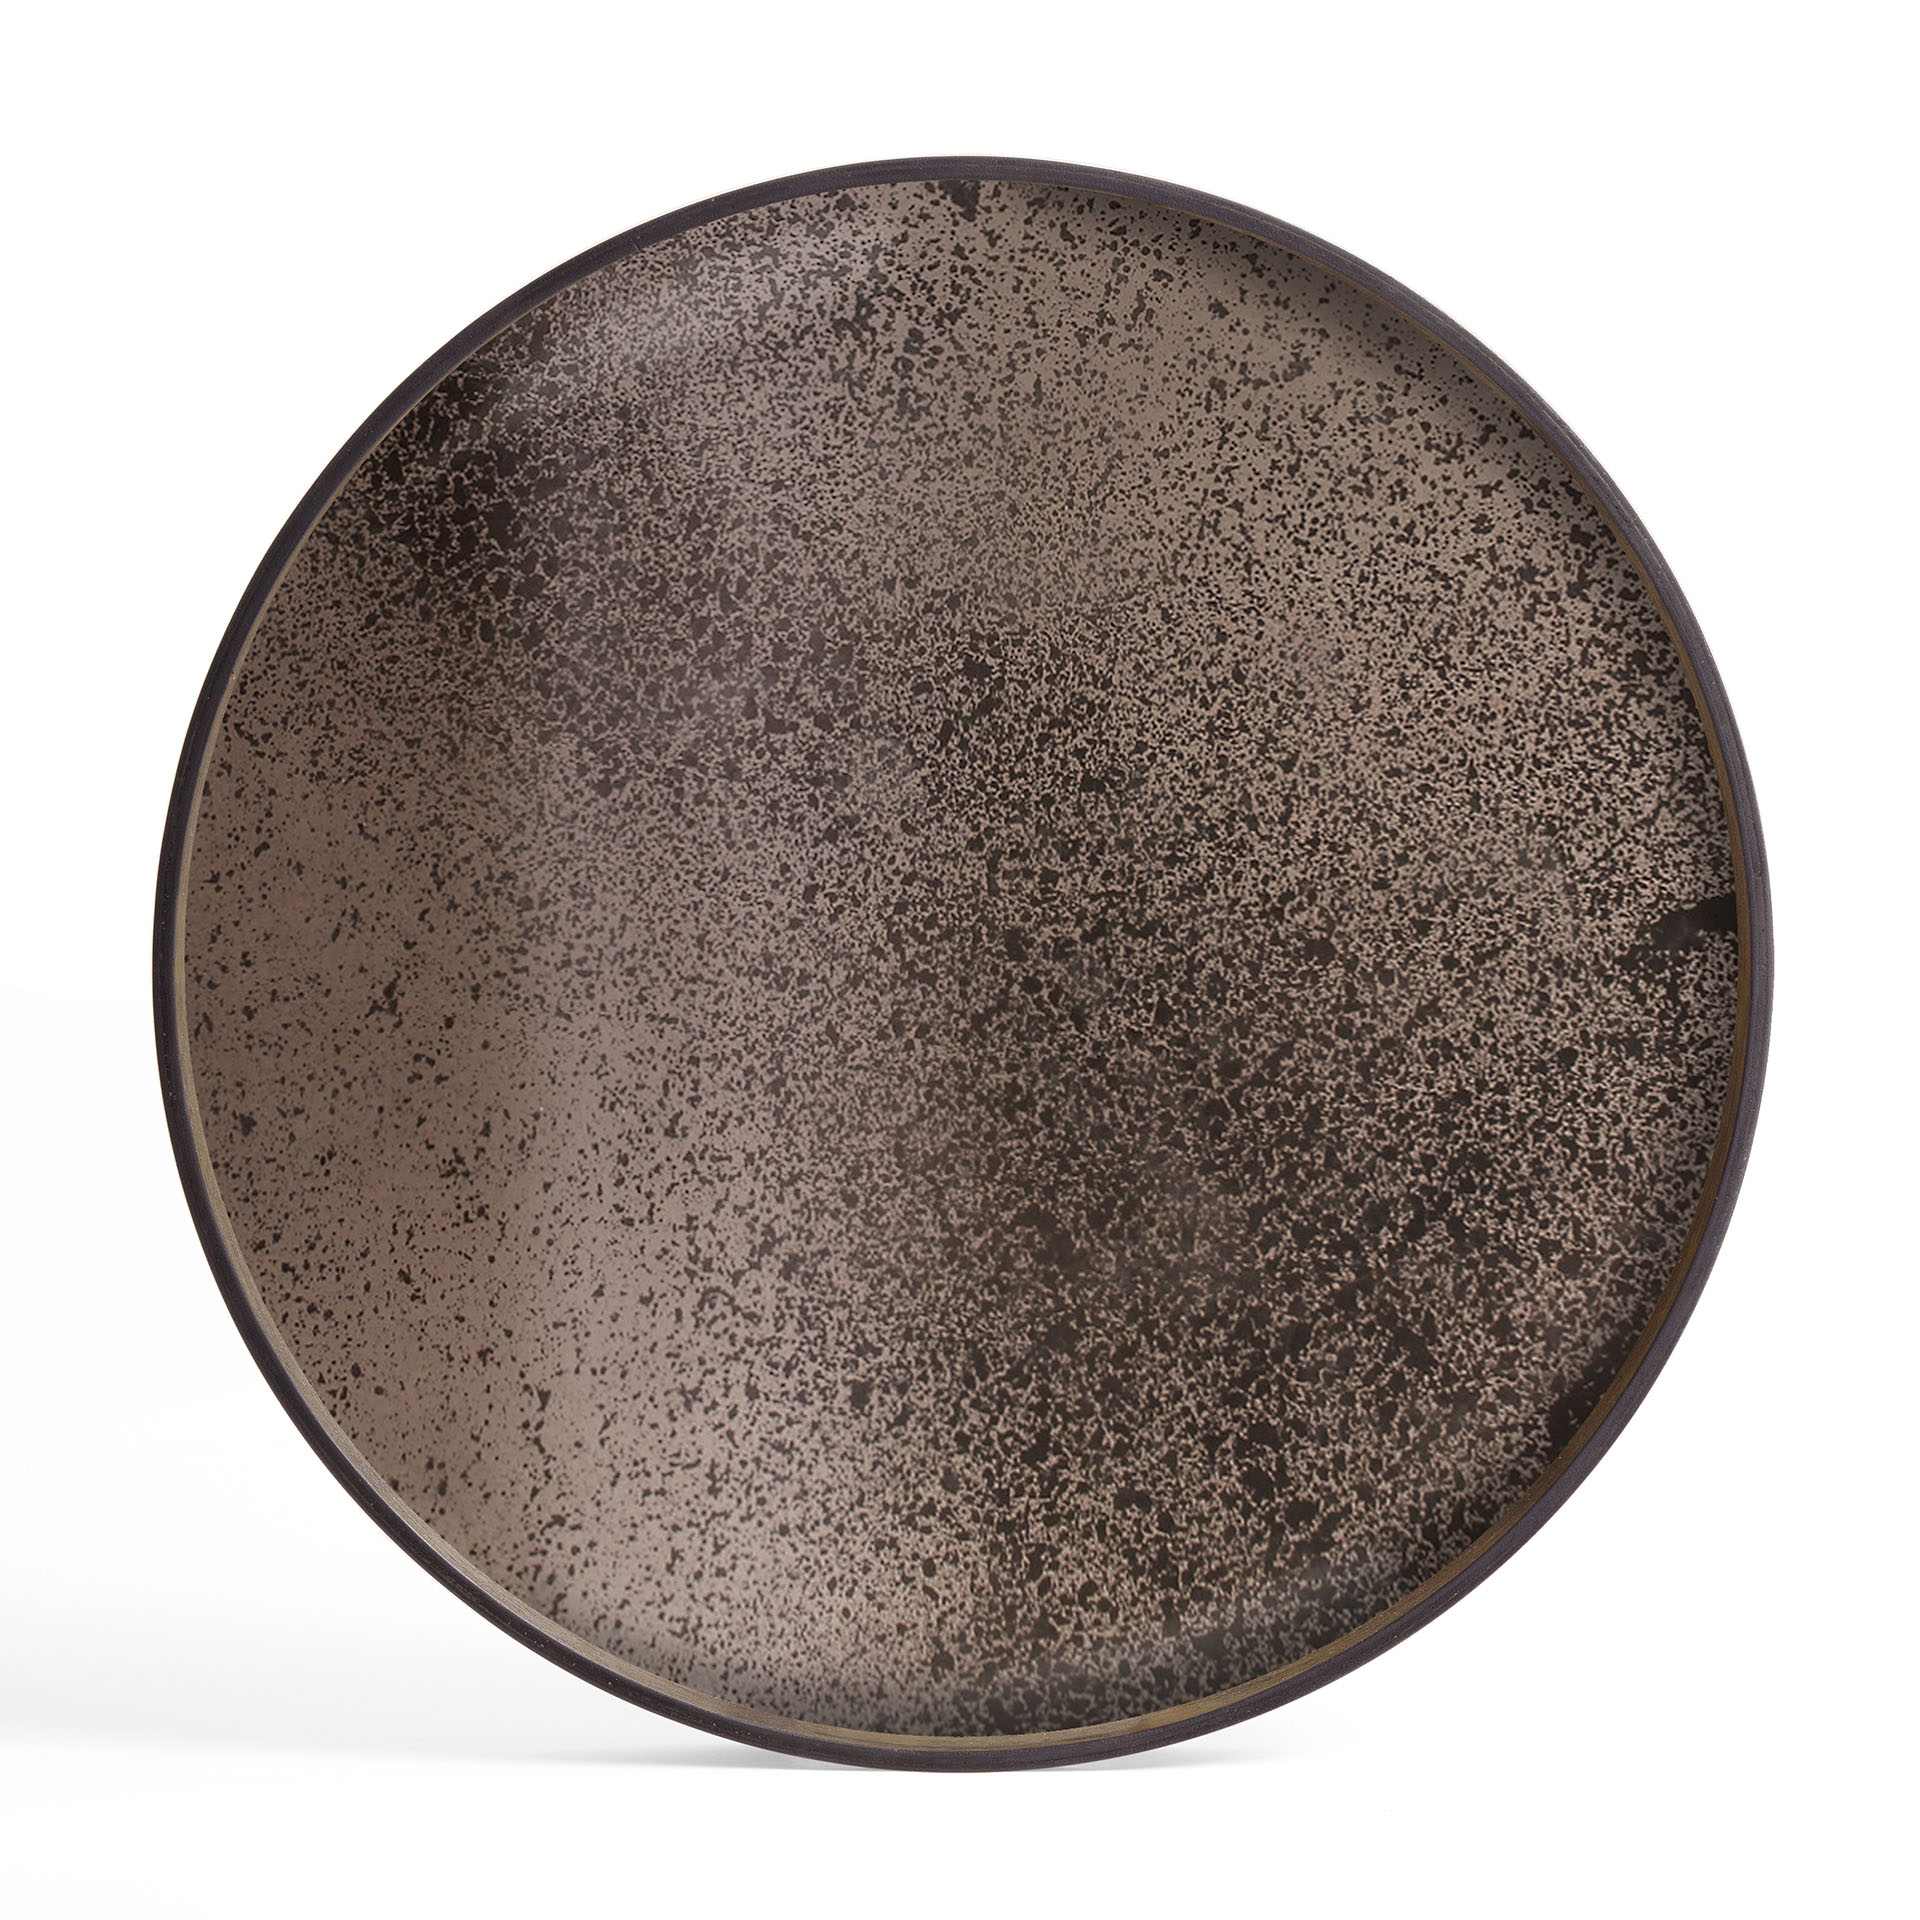 Ethnicraft - Aged dienblad Bronze XL (Ø 92 cm x 4 cm)